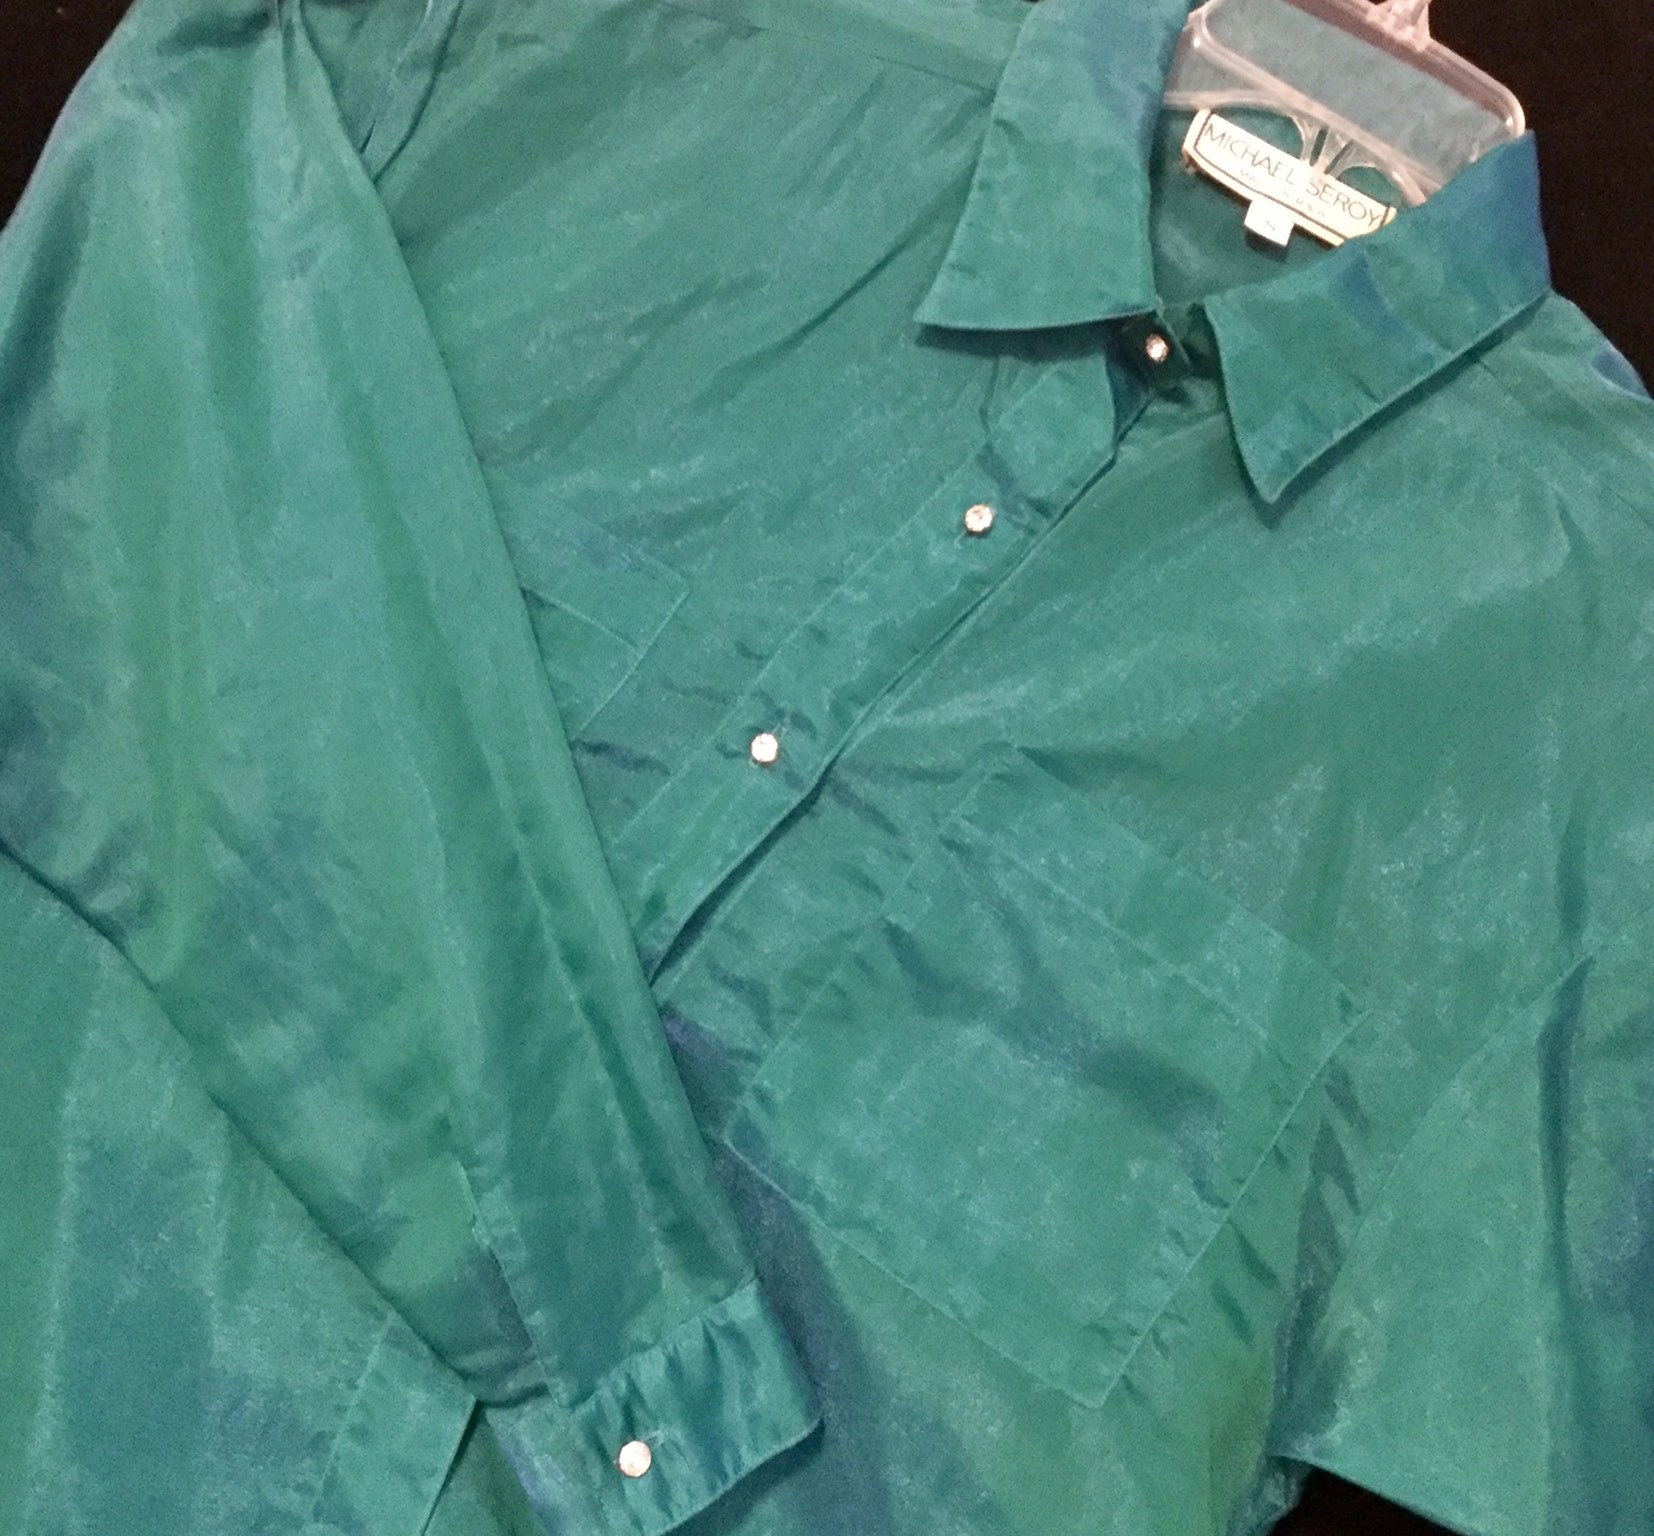 Green Metallic Blouse/shirt/top Sheer Chiffon Long Sleeve | Etsy